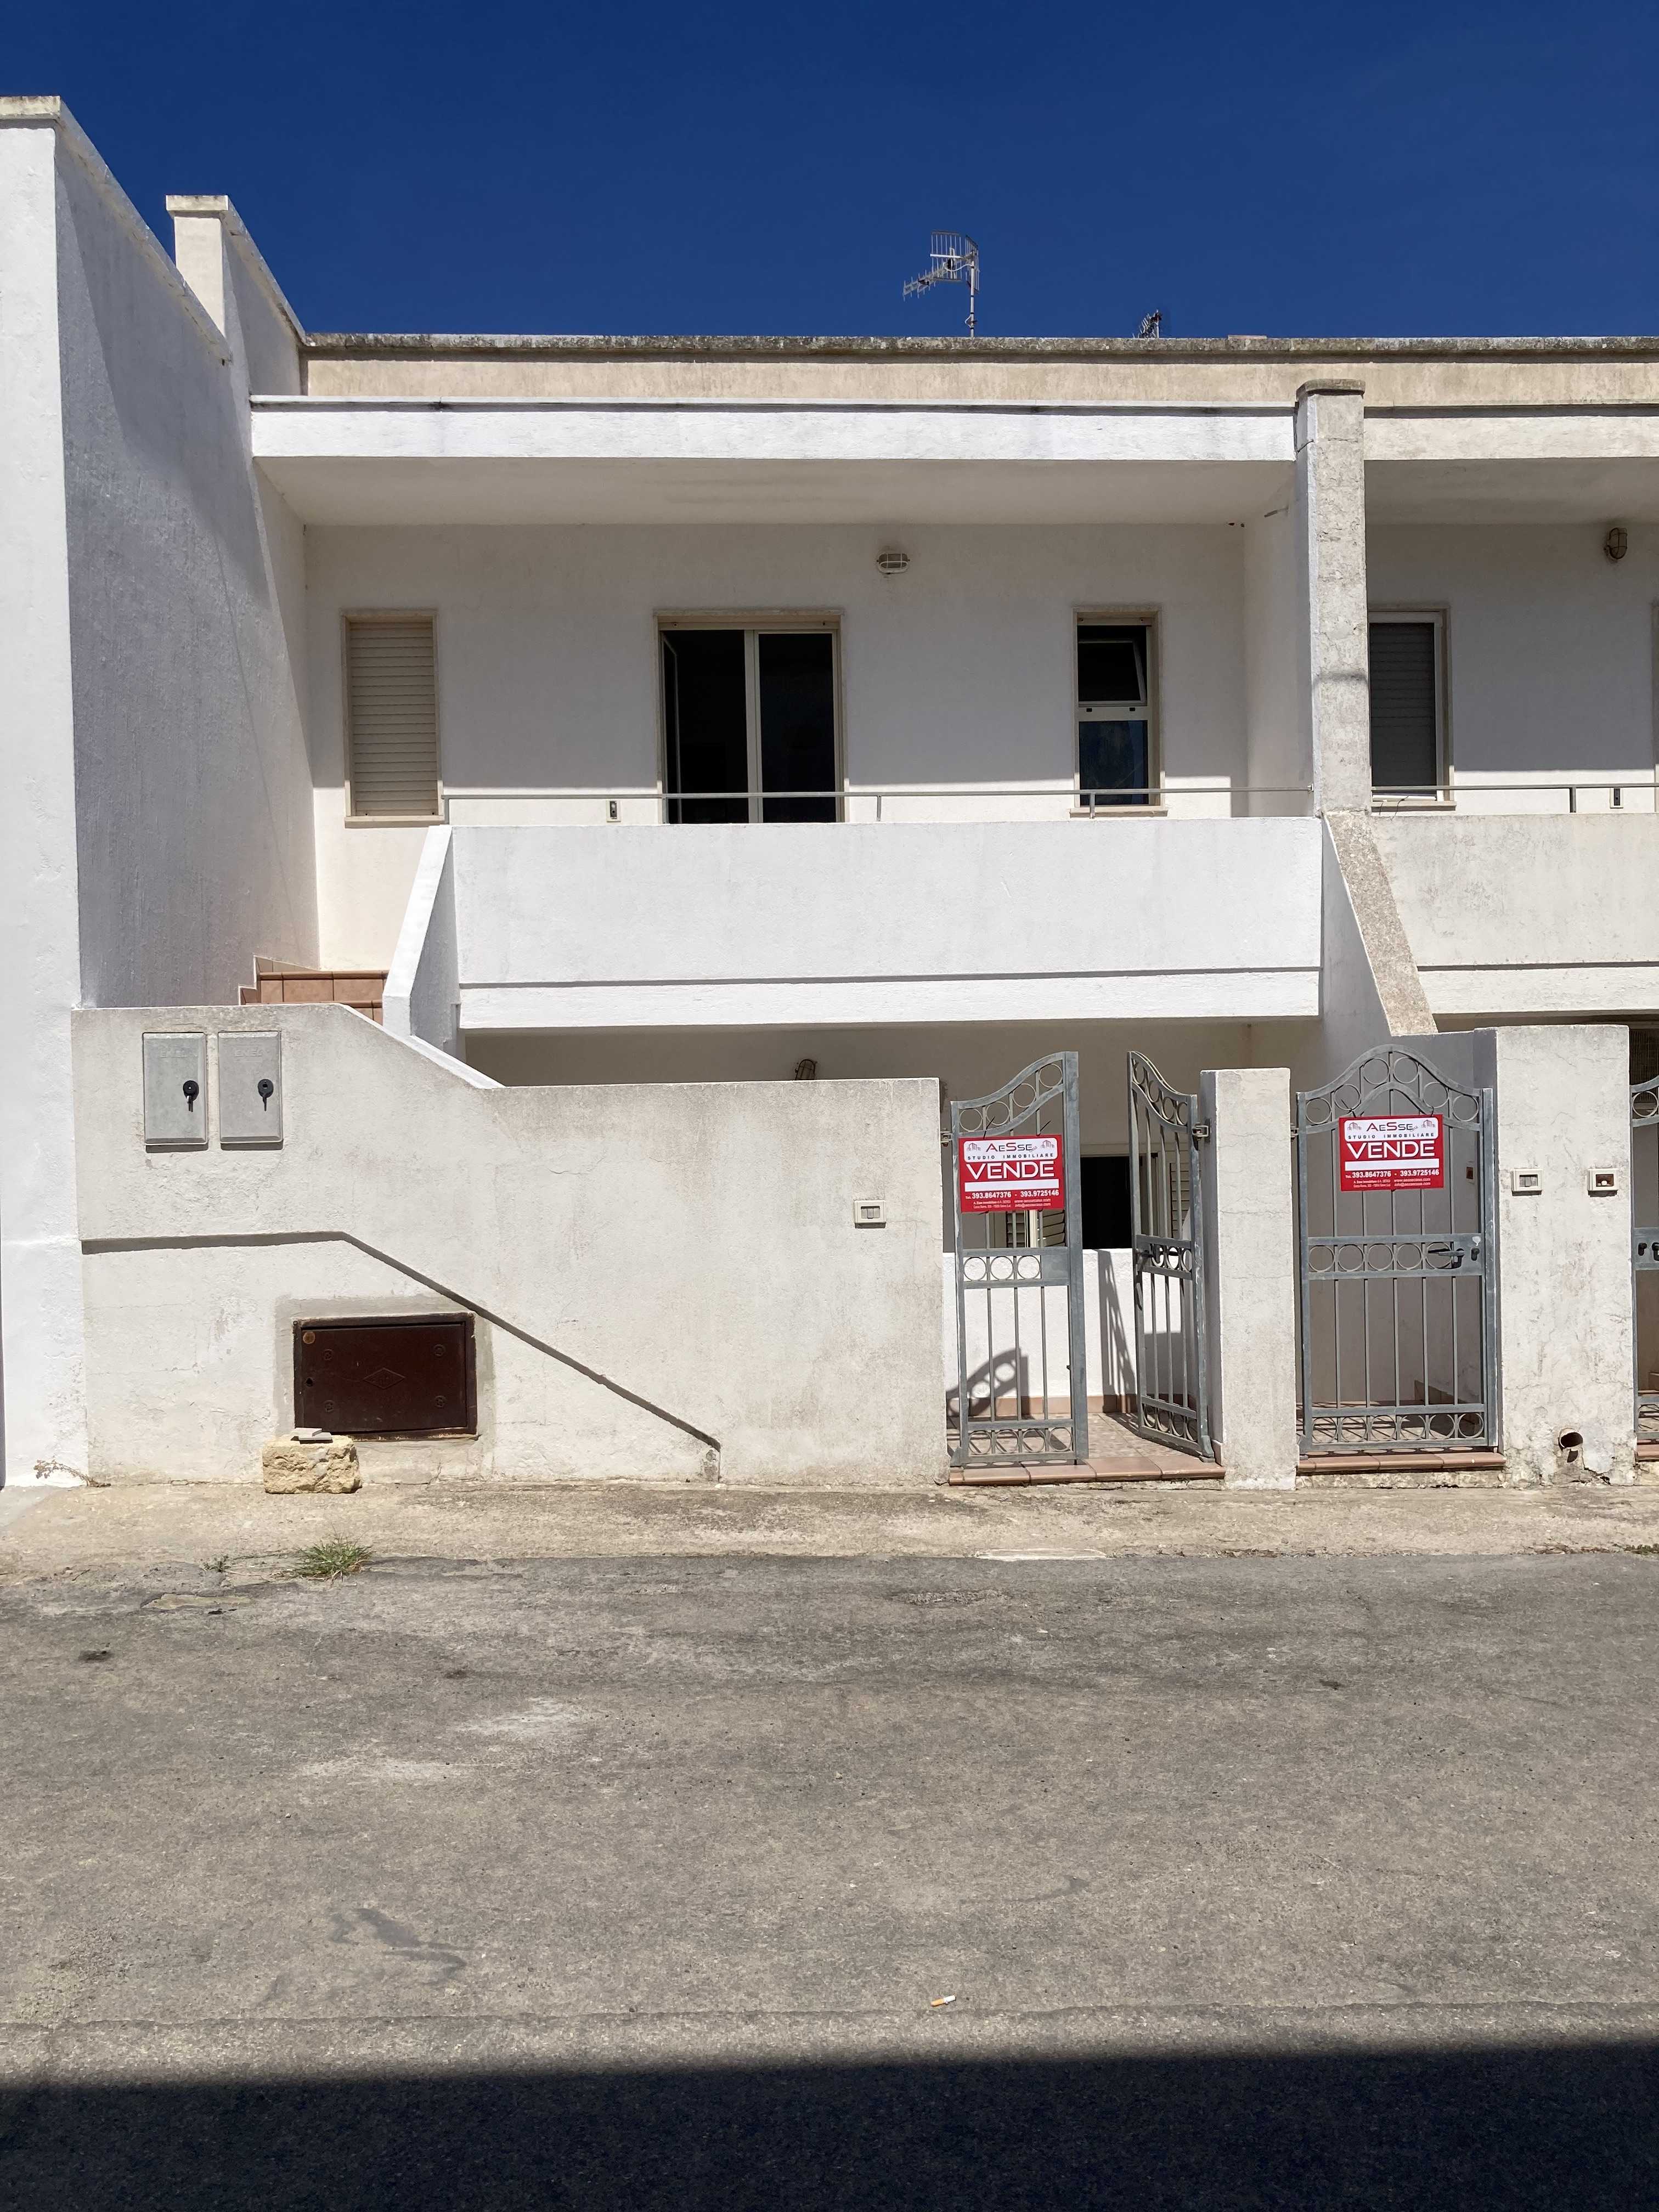 Vendite Salento: Vendita appartamento (Castrignano del Capo) - esterno